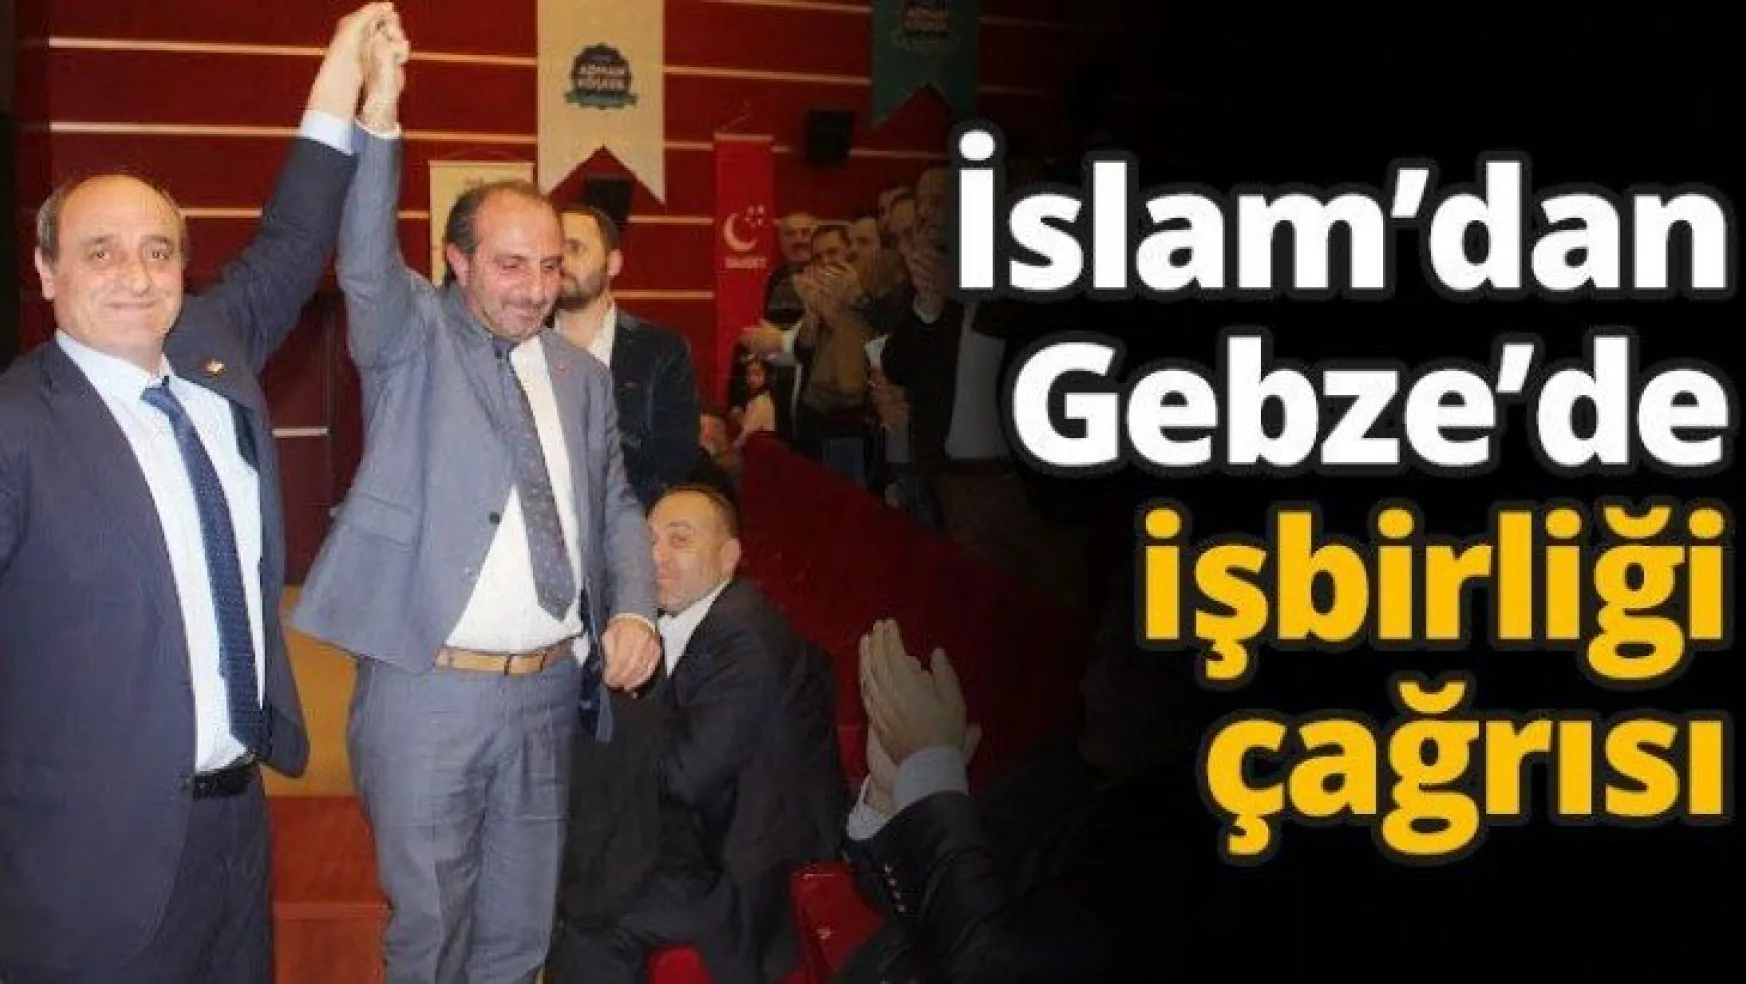 İslam'dan Gebze'de işbirliği çağrısı